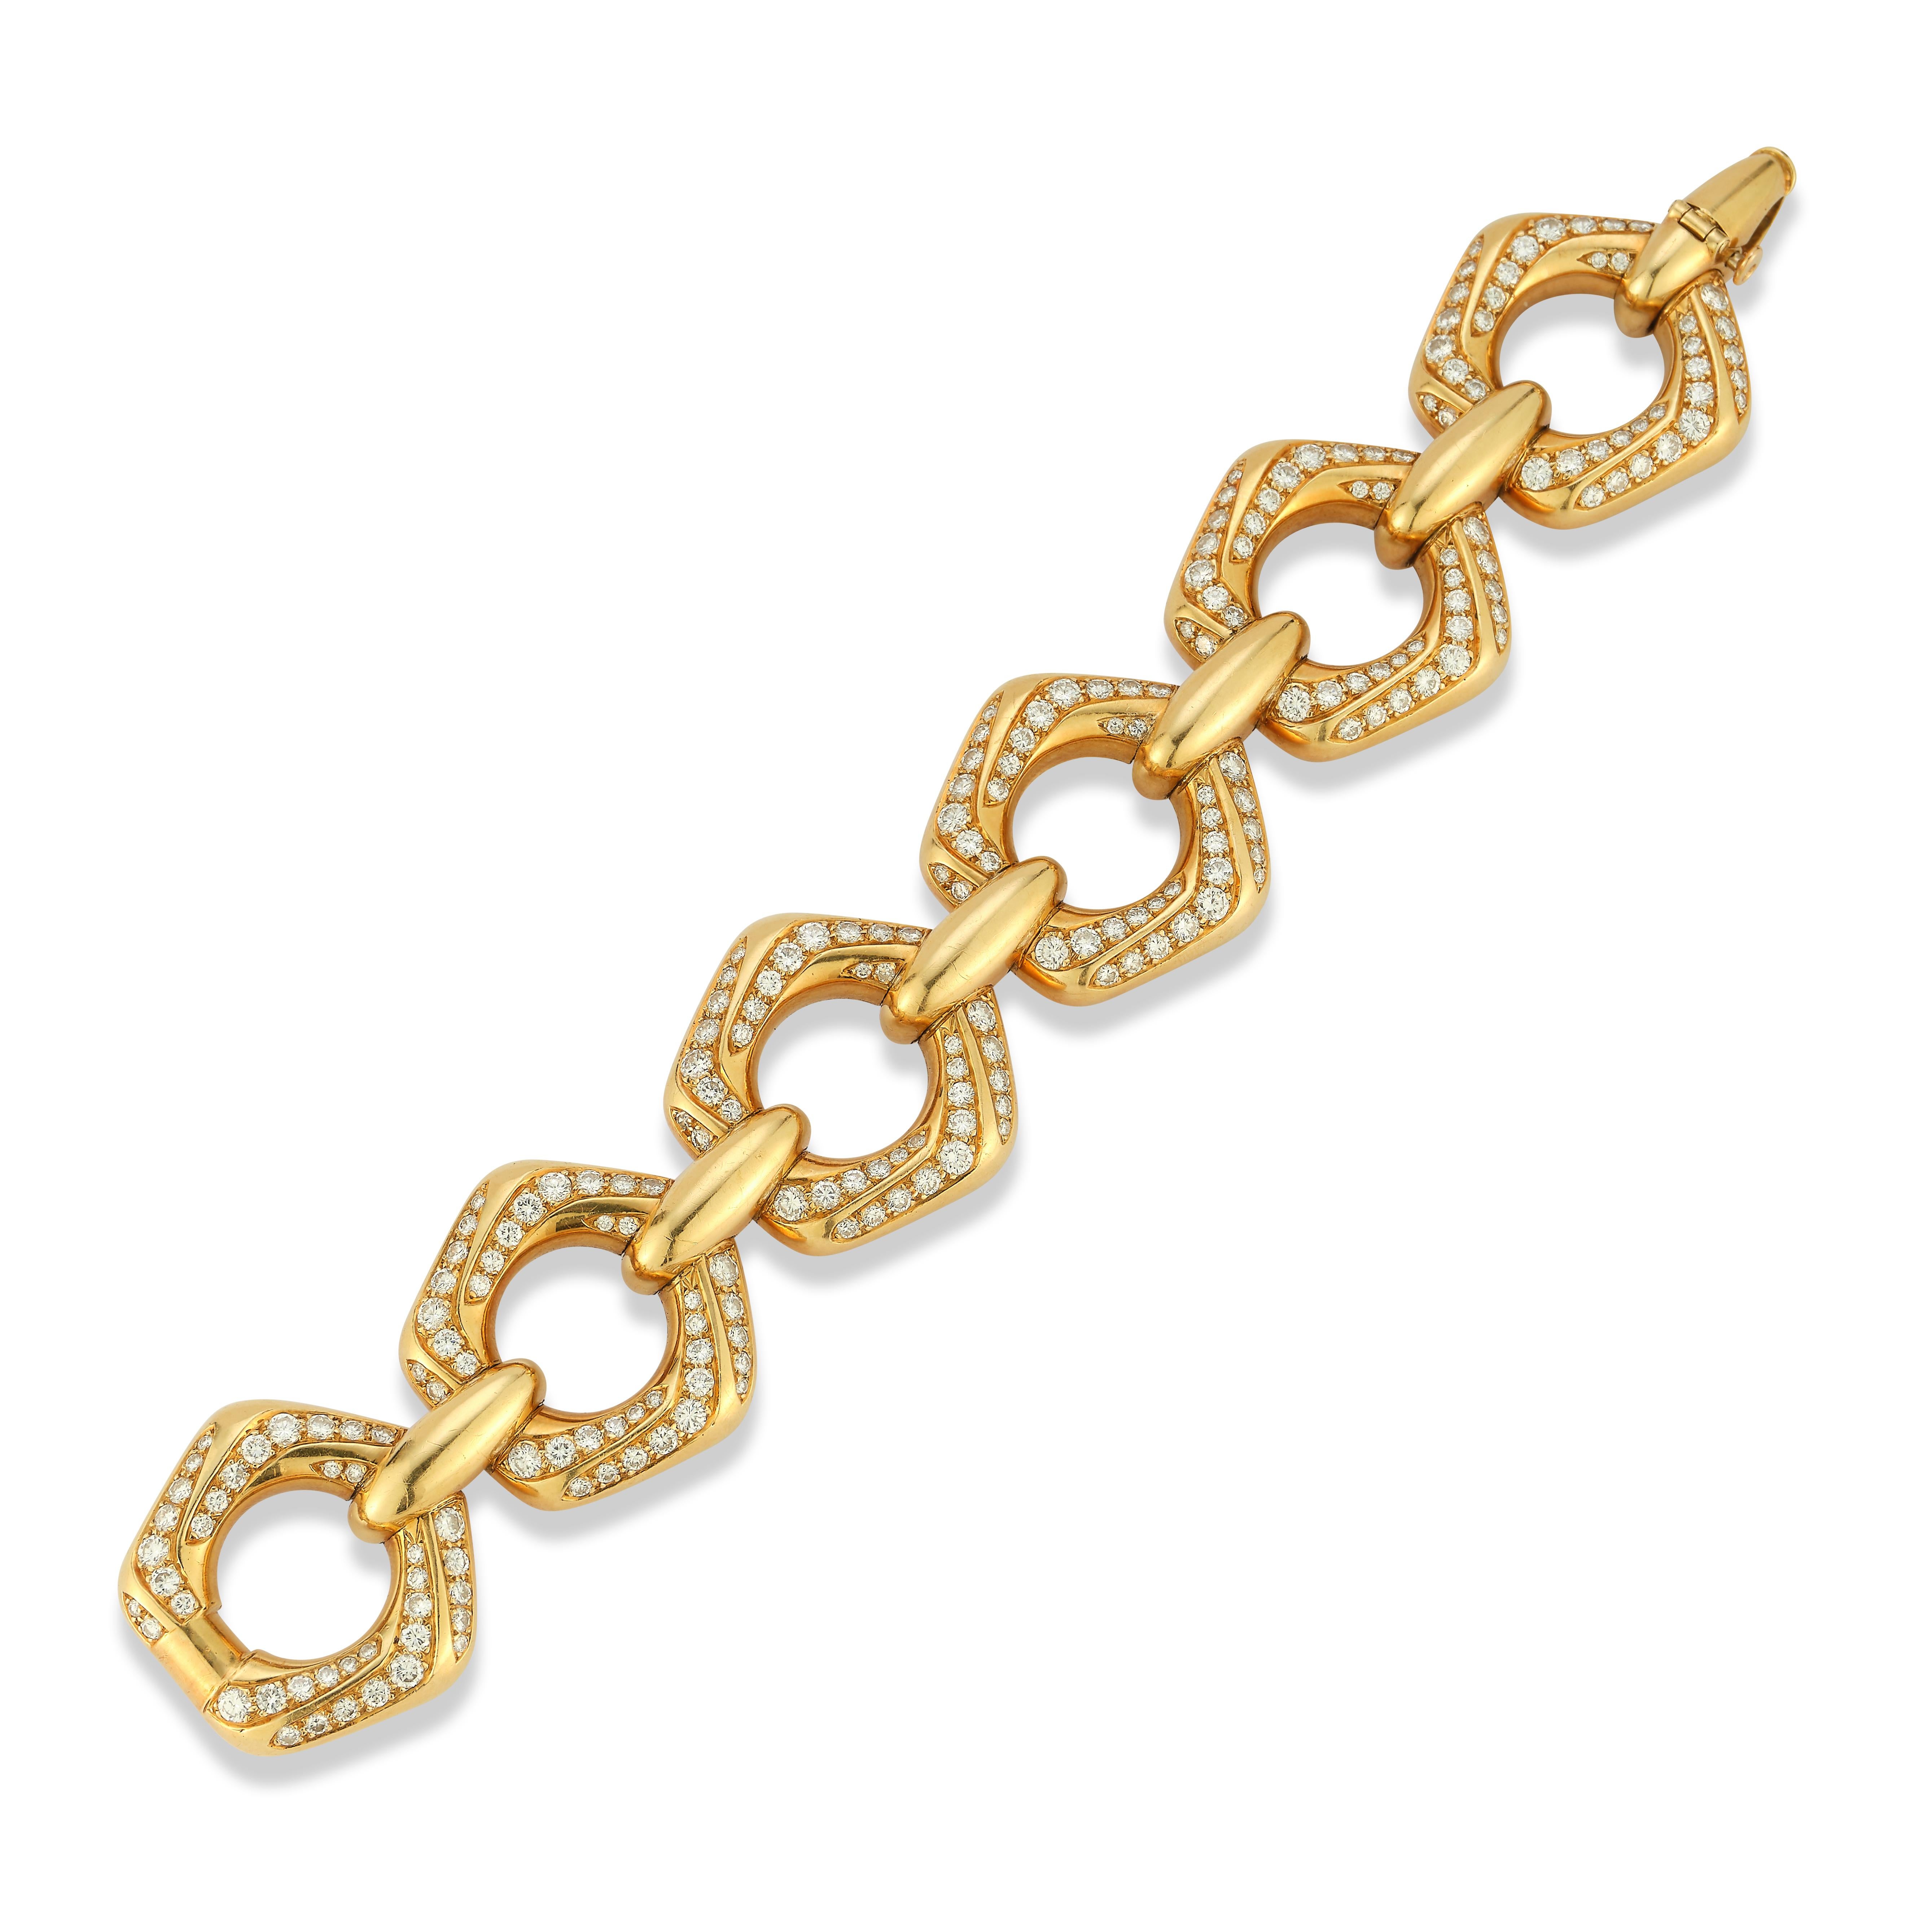 Van Cleef & Arpels Diamant-Armband

Ein Armband aus 18 Karat Gold, besetzt mit 234 runden Diamanten von etwa 14 Karat

Signiert Van Cleef & Arpels und nummeriert
Gestempelt 750

Länge 7